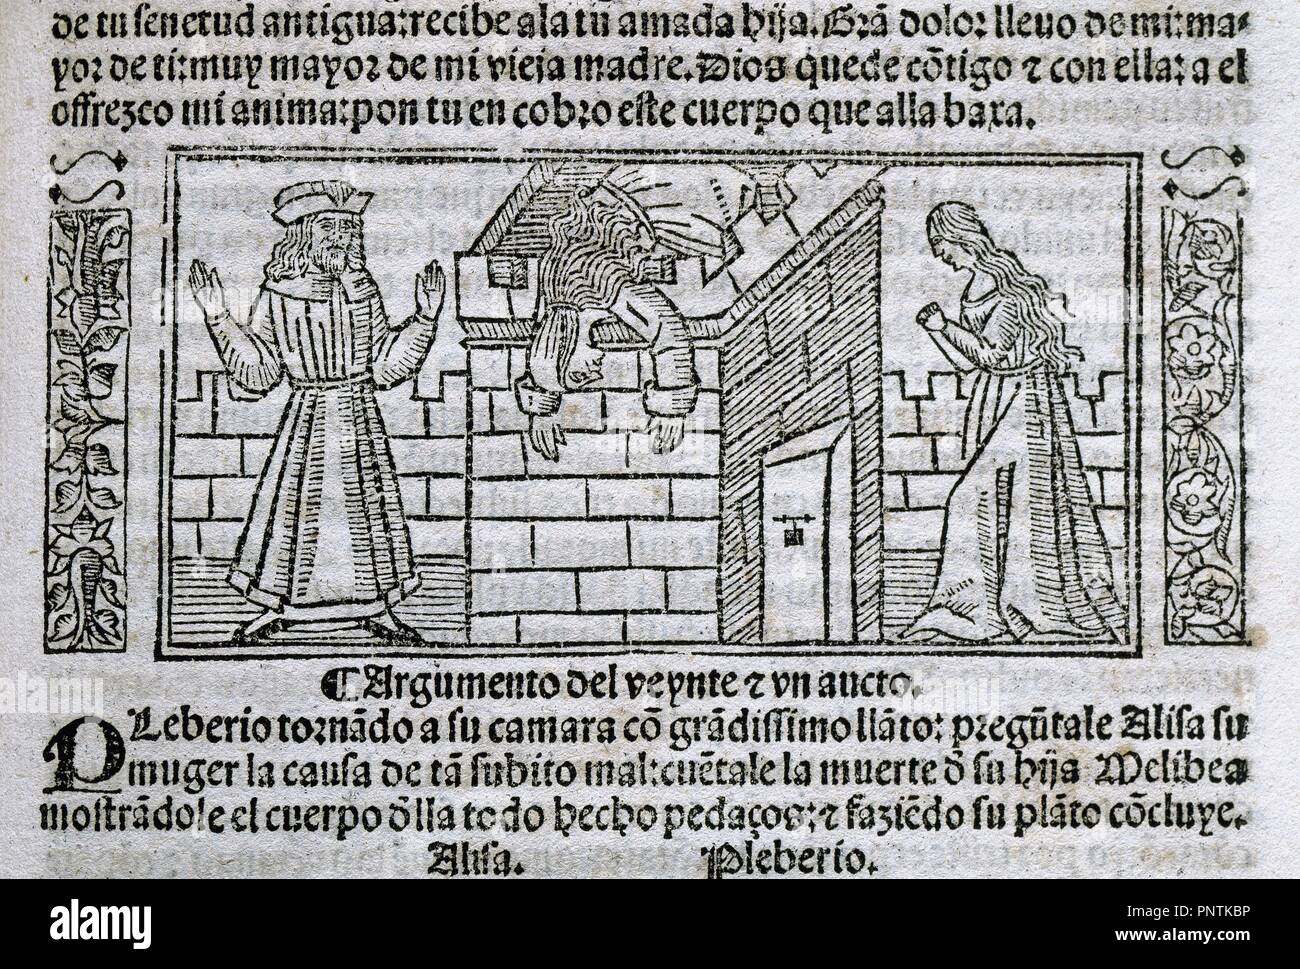 Fernando de Rojas (1465-1541). Escritor español. Tragicomedia de Calisto y Melibea o La Celestina. Grabado. Burgos, 1531. Foto de stock